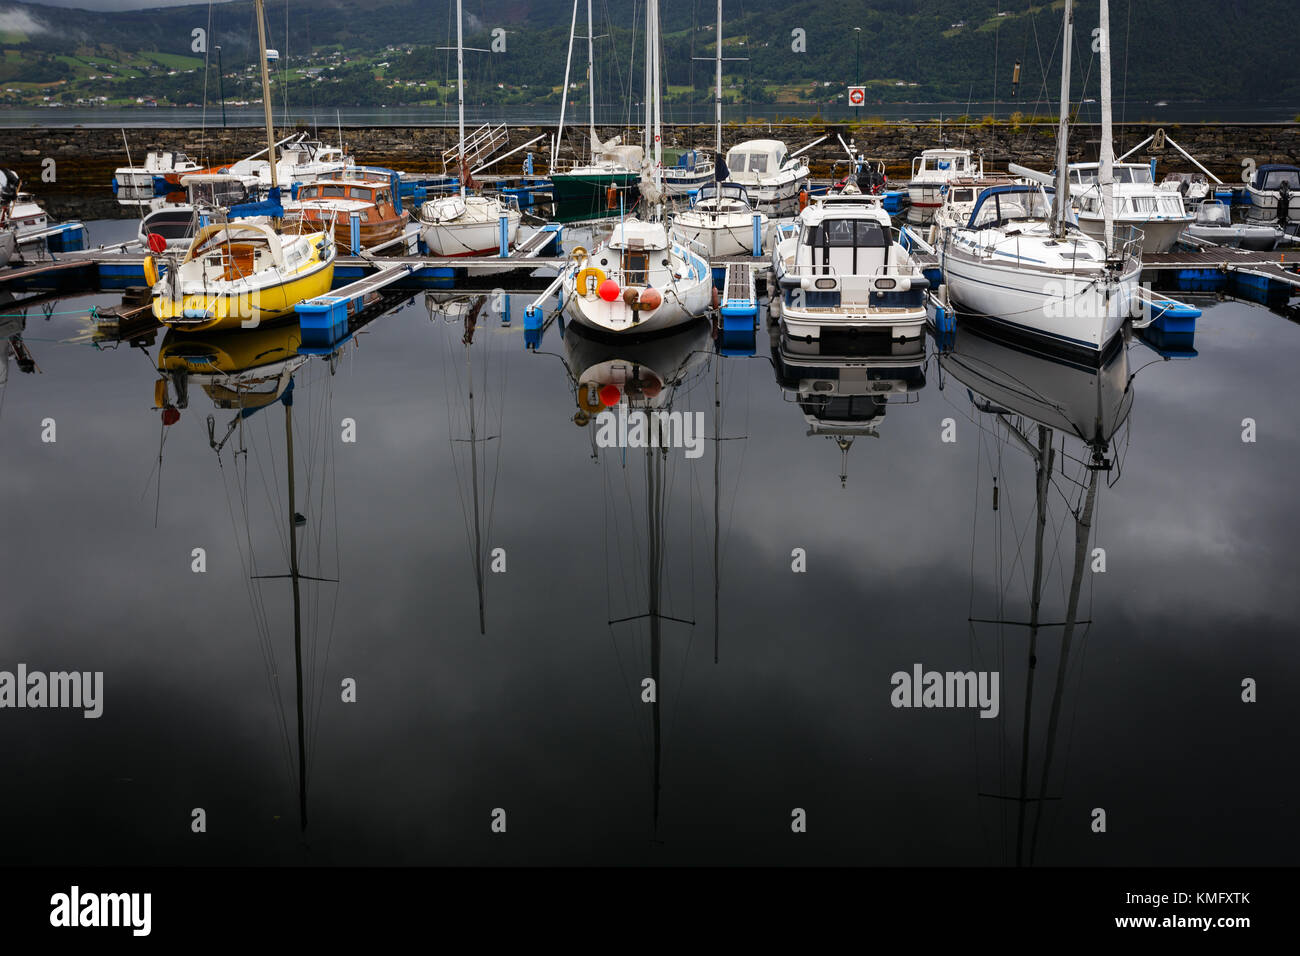 Reflet de yacht dans le lac, Norvège Banque D'Images